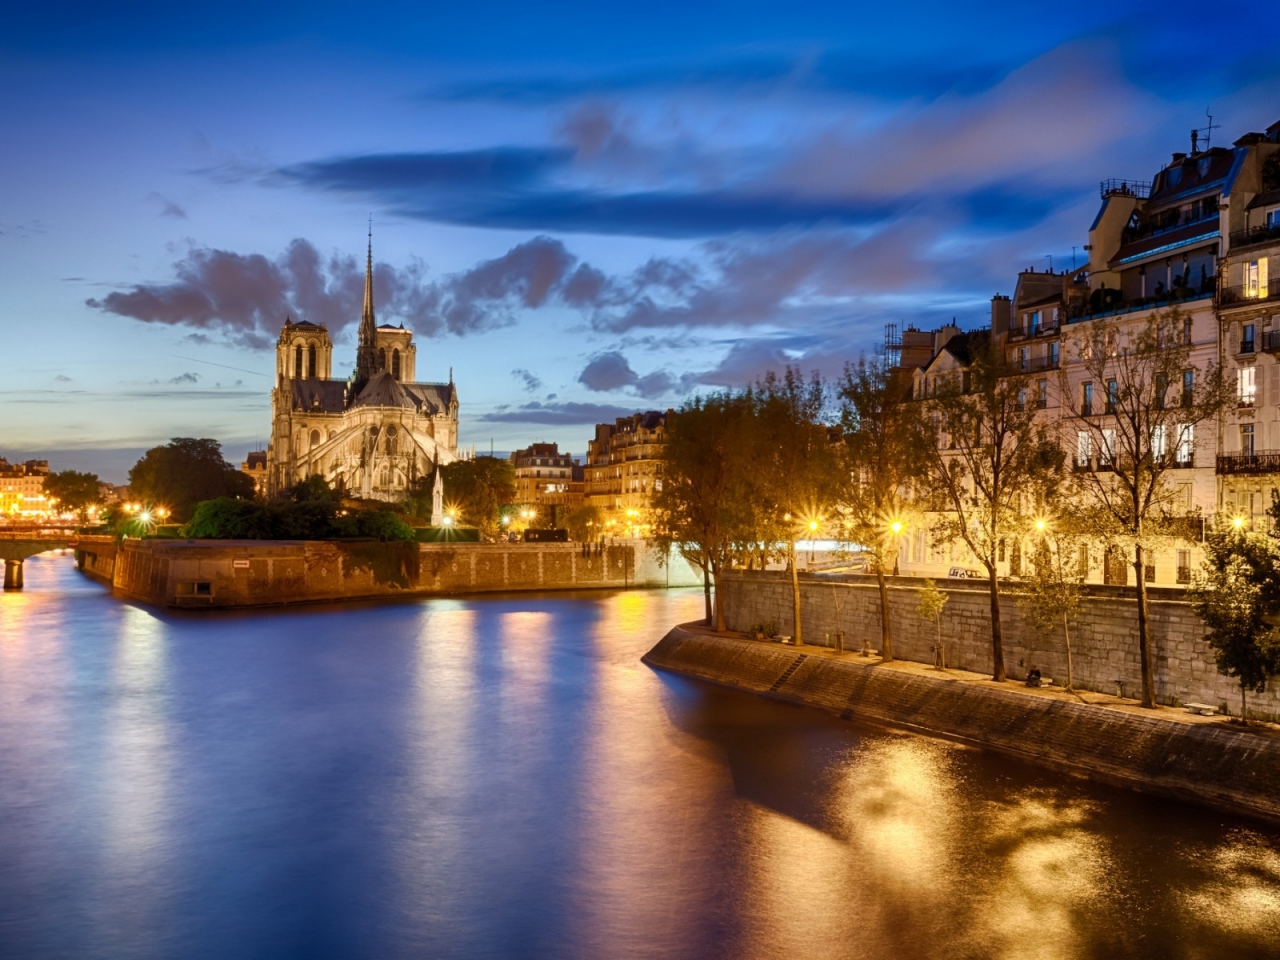 View of Notre Dame de Paris for 1280 x 960 resolution